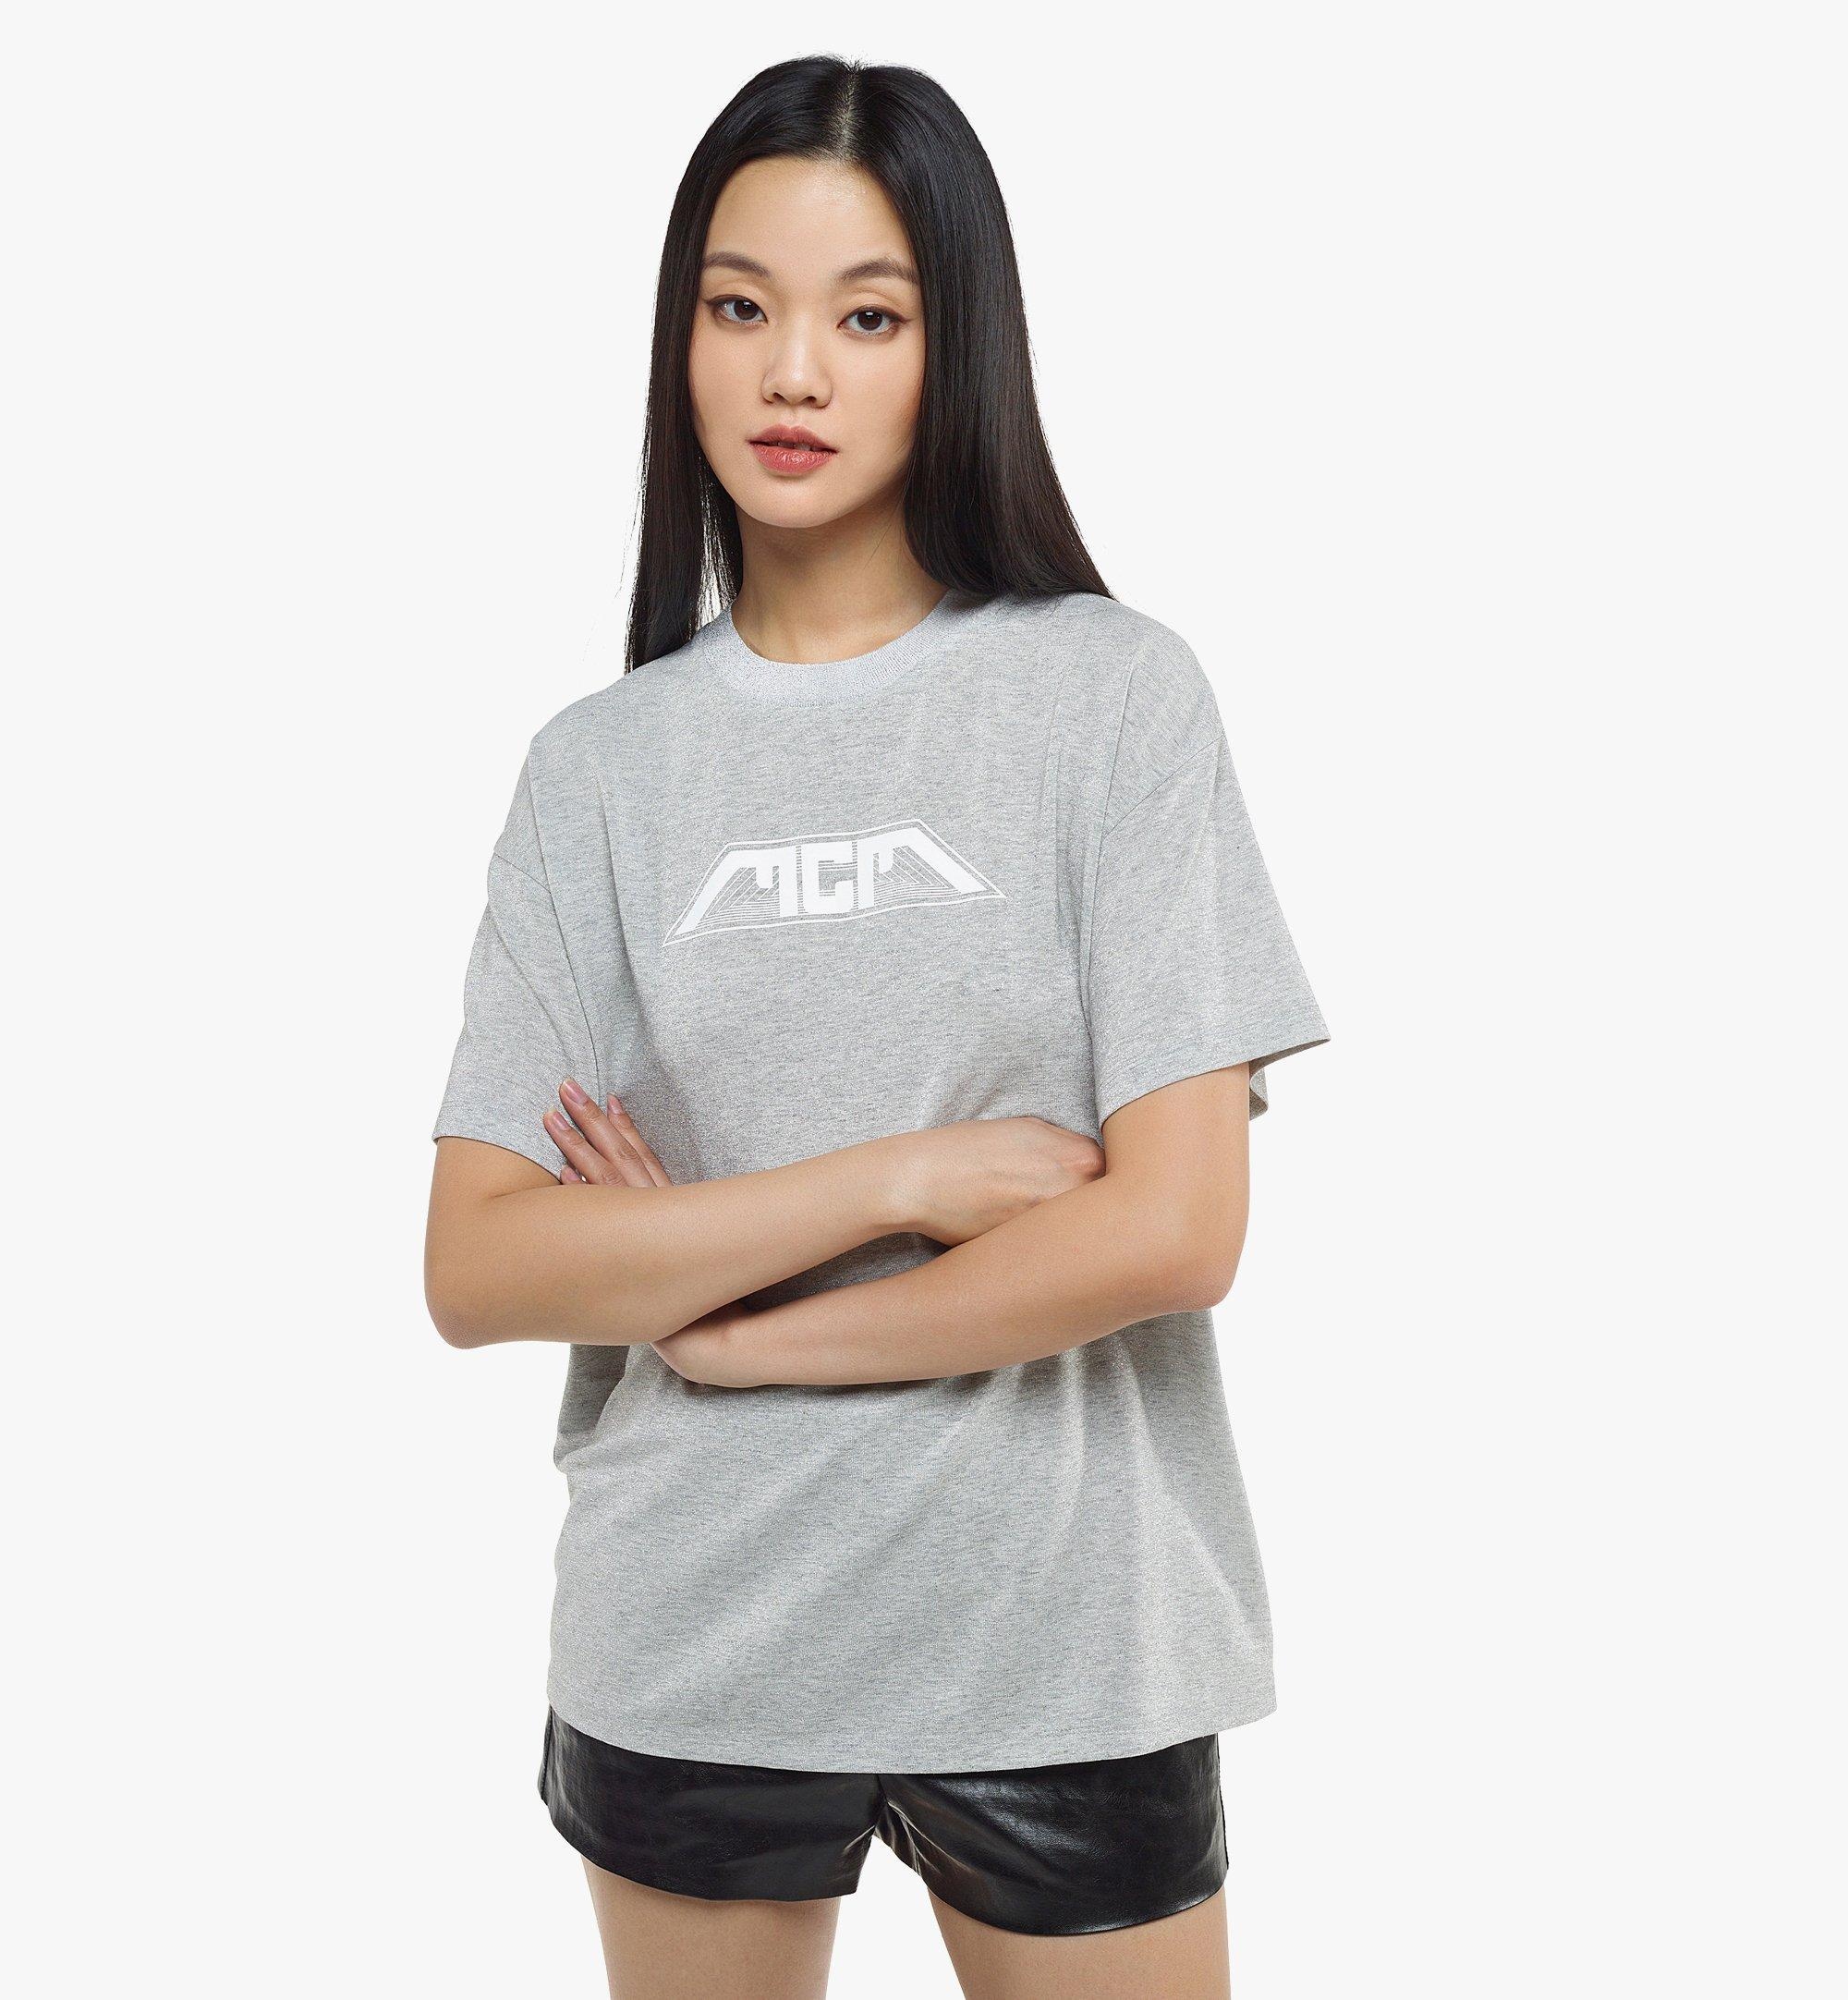 Women’s Meta Cyberpunk Logo T-Shirt in Organic Cotton - 4